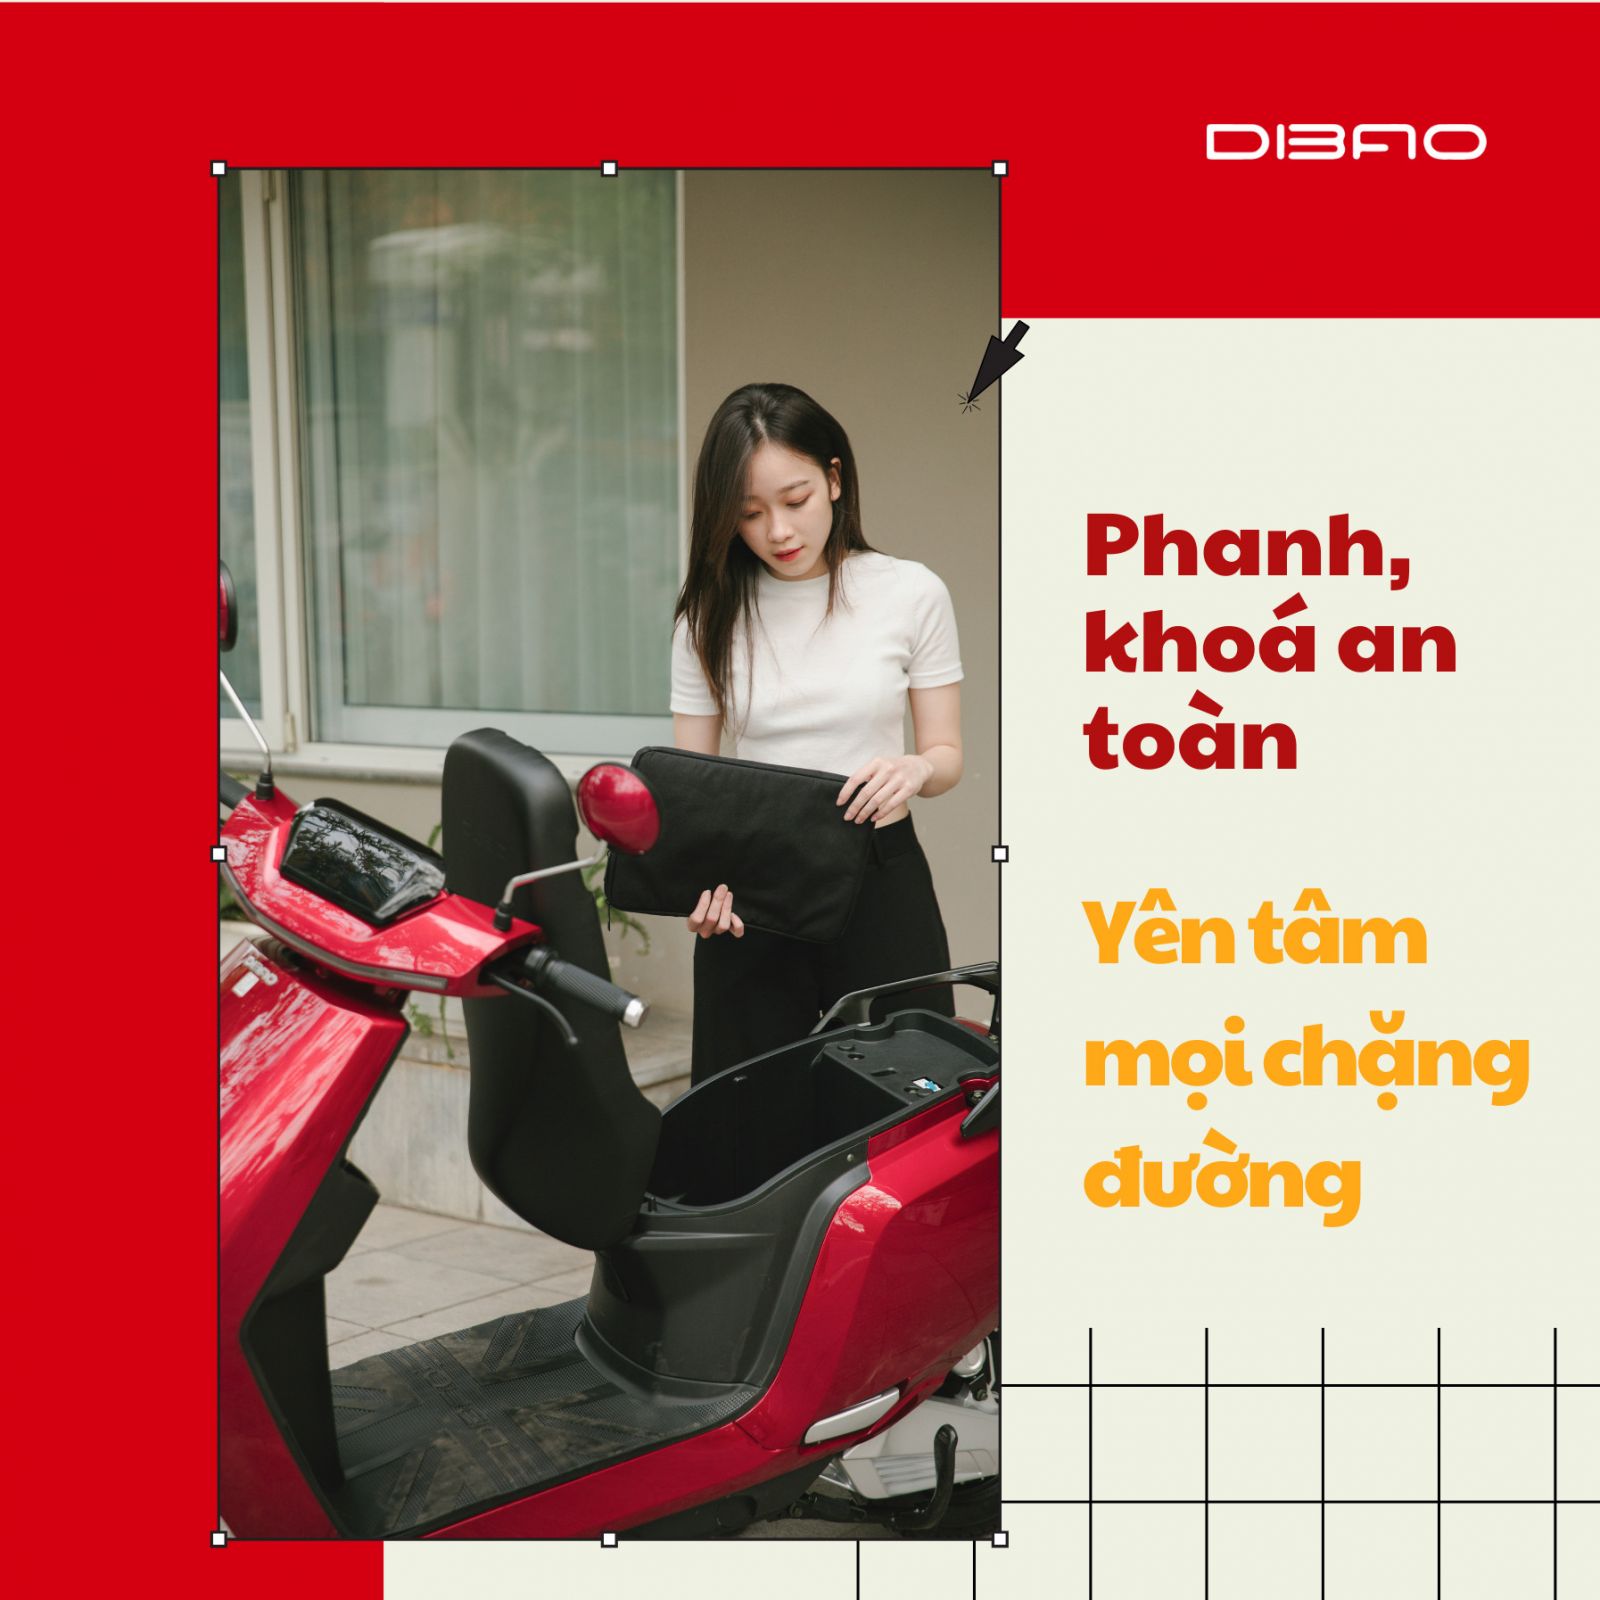 Nghe chuyên gia đánh giá về xe máy điện Dibao R1 2021: chất lượng và đẳng cấp